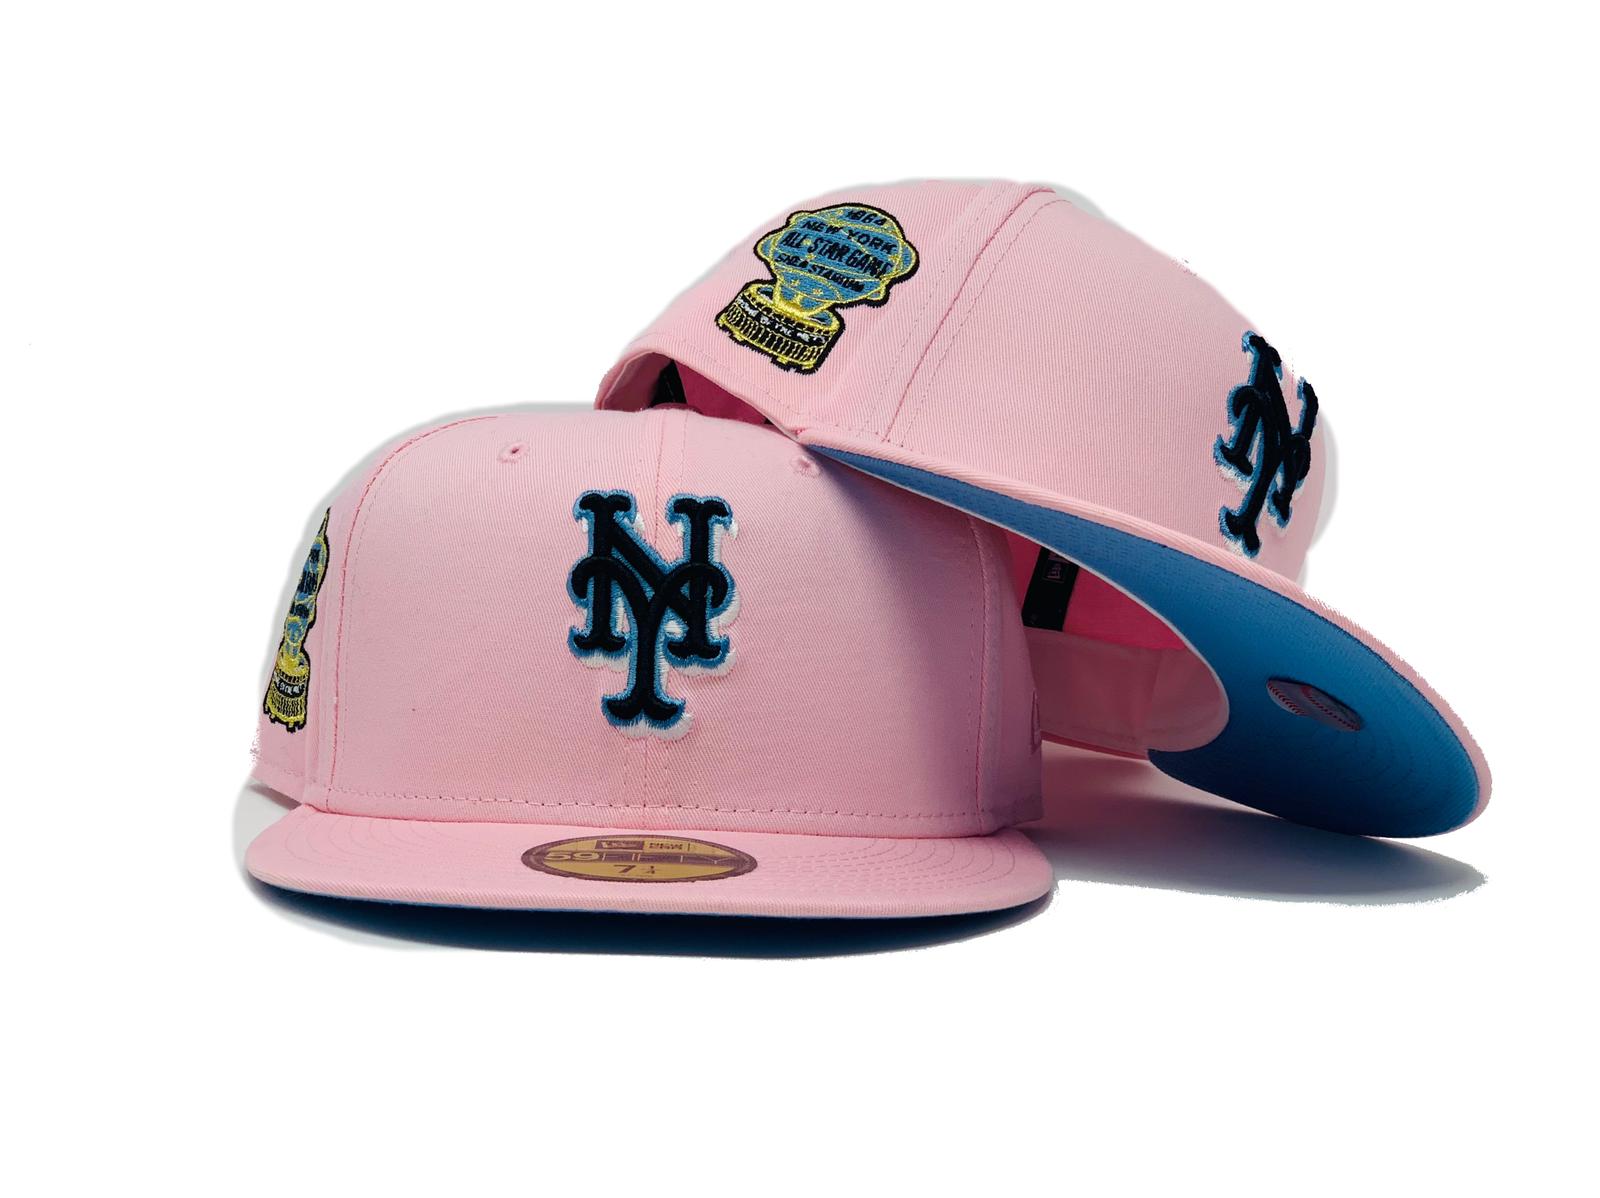 KTZ Girls' New York Mets Disney Tykes Trucker 9twenty Cap in Pink